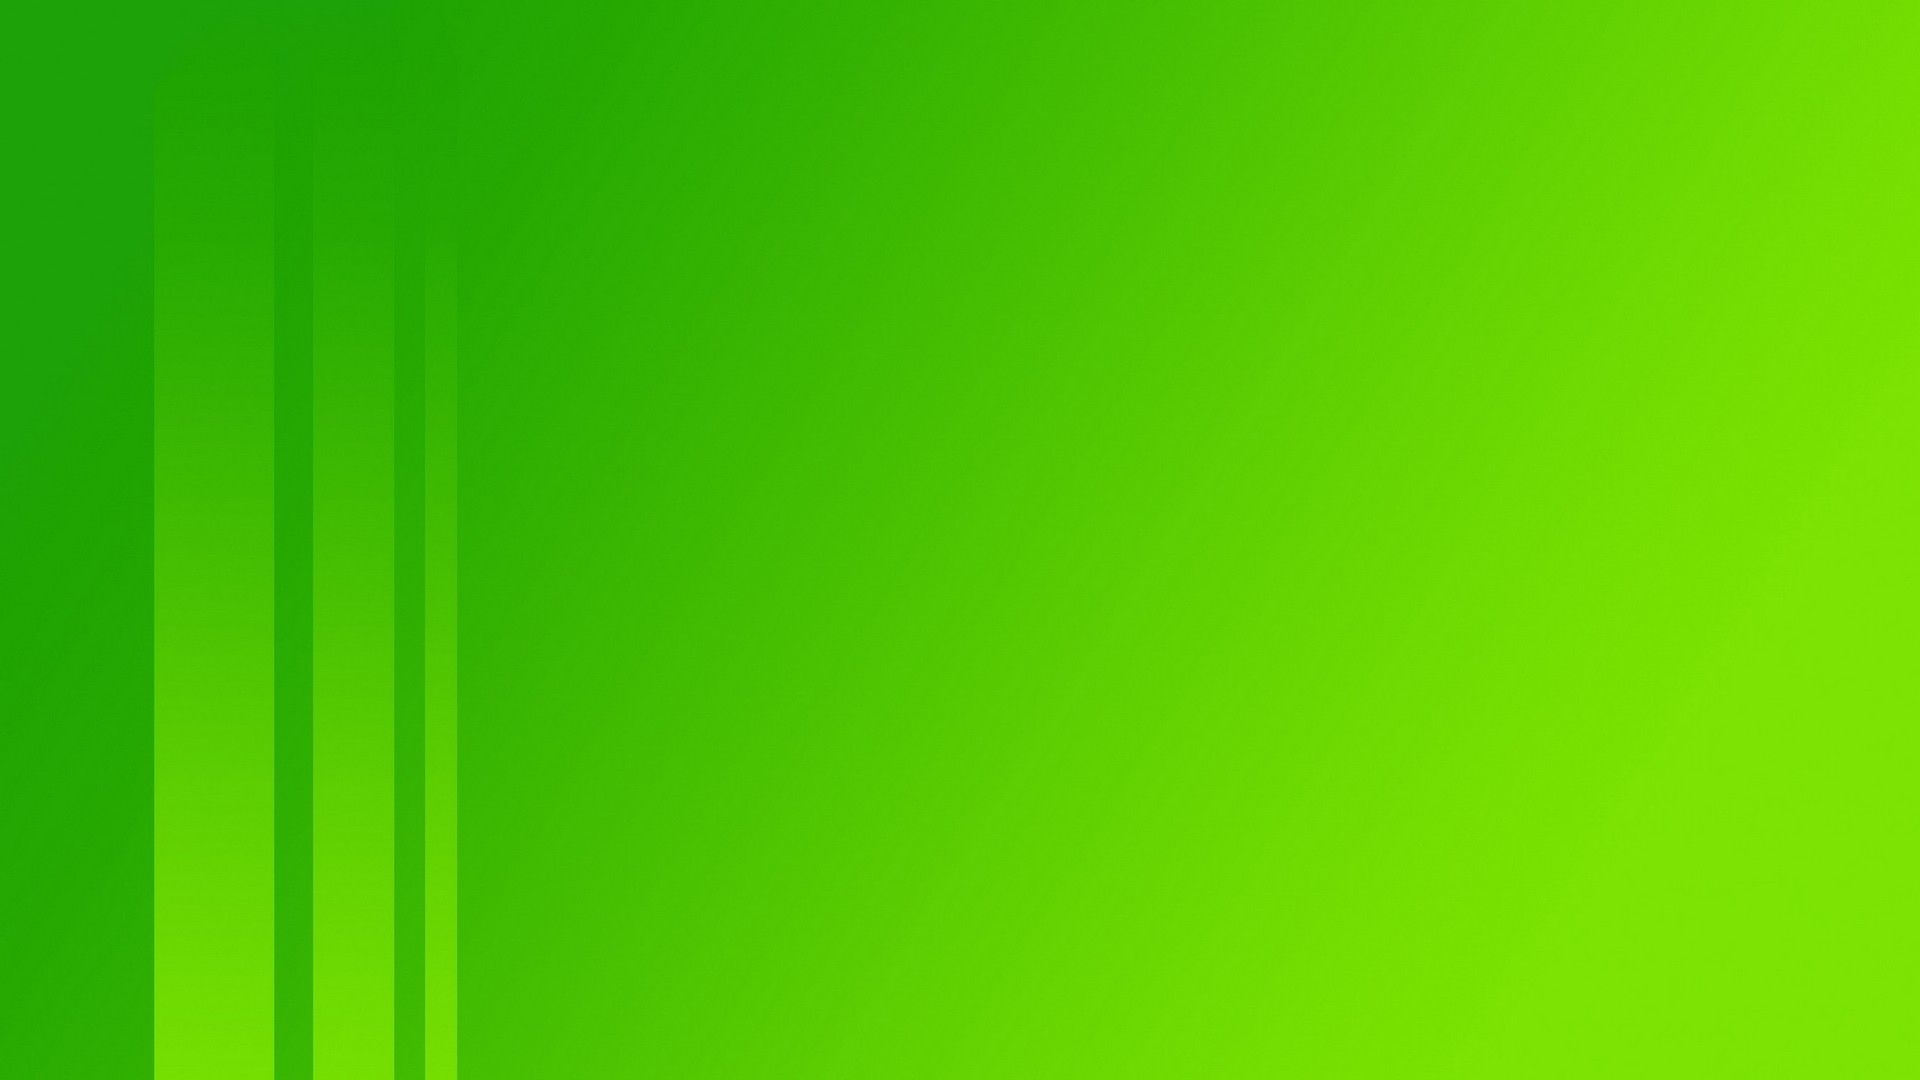 2923892 1920x1080 rayas verdes fondo de pantalla y fondo JPG 92 kB